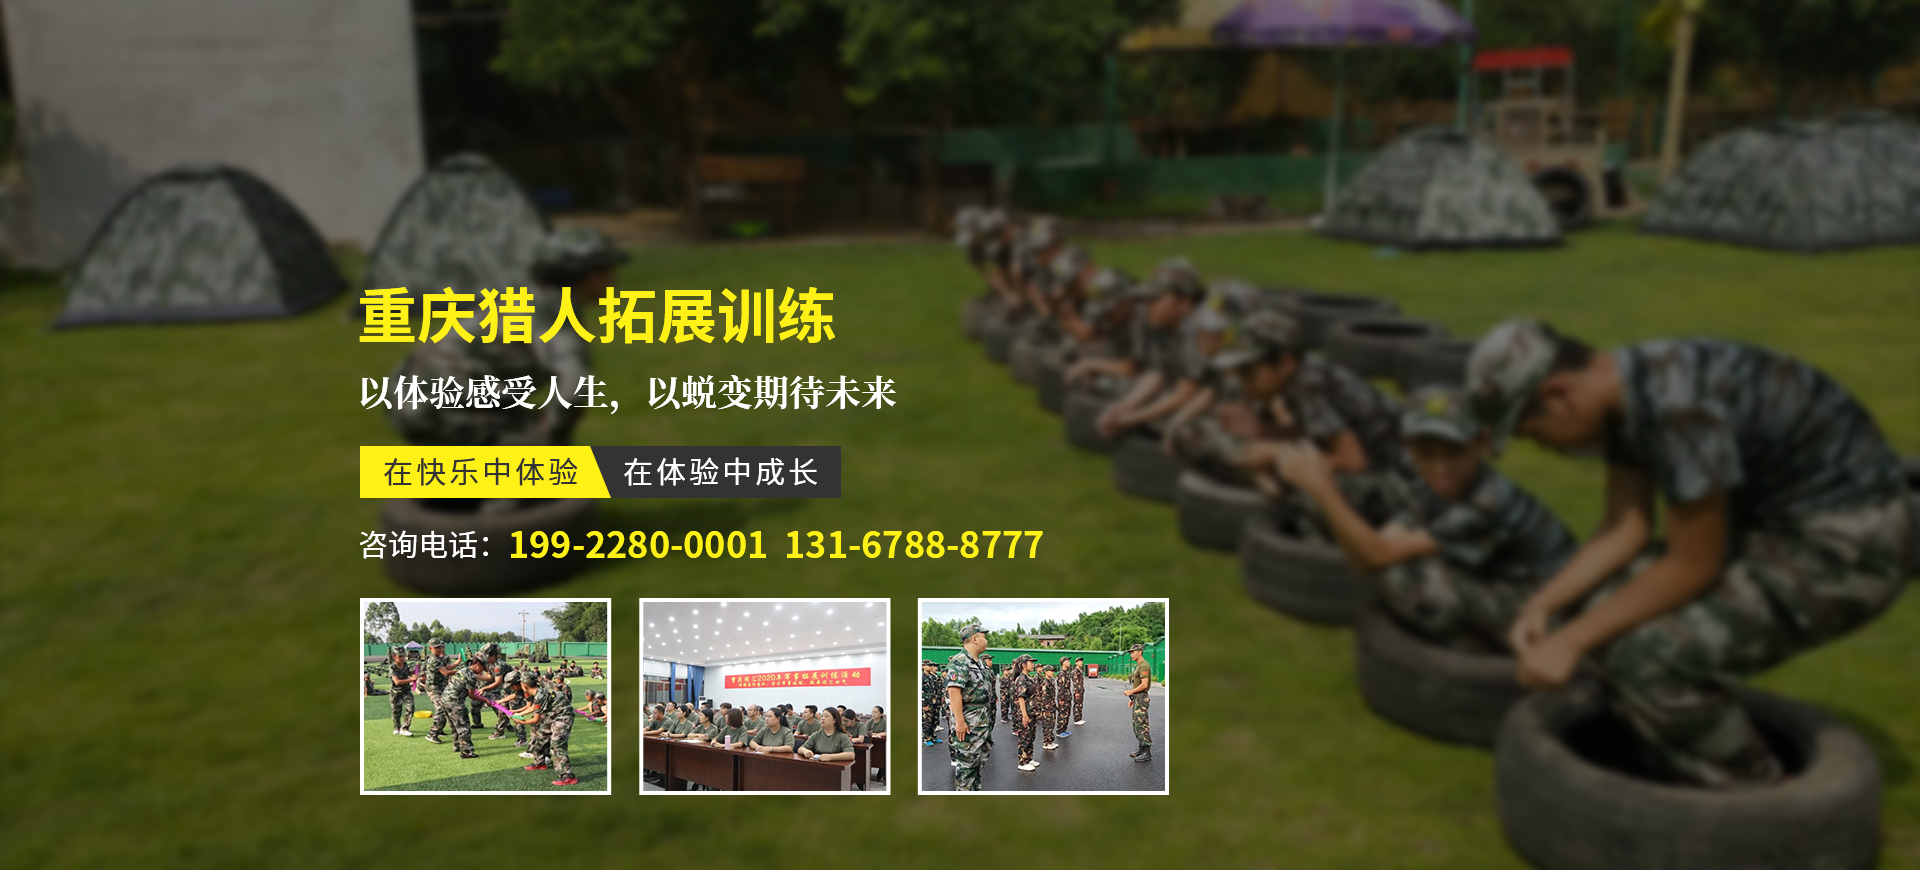 重慶軍事夏令營